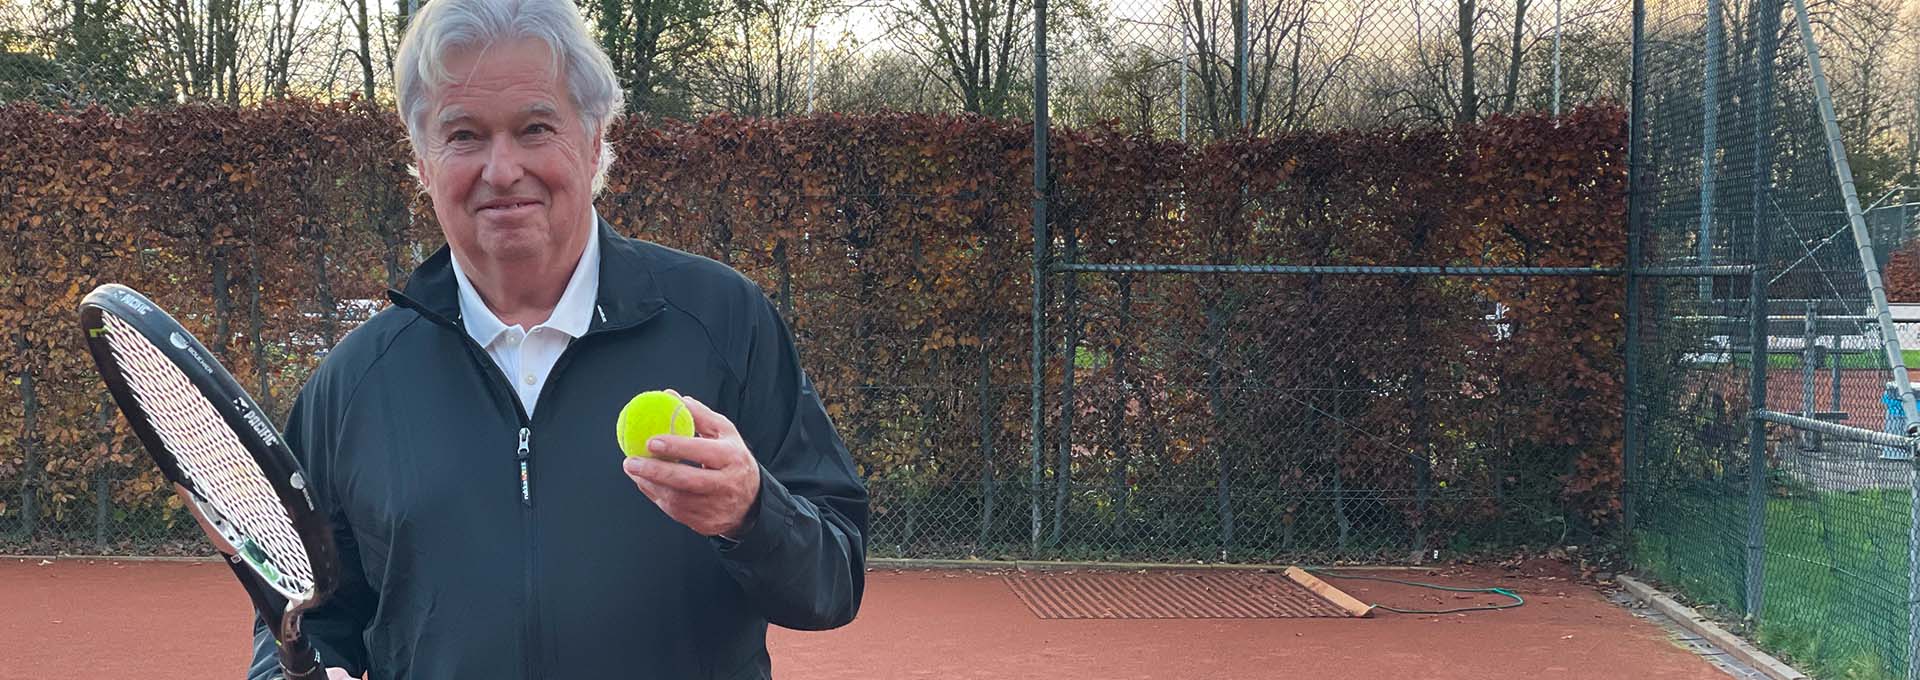 Utilisateur d'une aide auditive Bernafon Alpha (homme) avec une balle de tennis et une raquette en main sur un court regardant la caméra, prêt à jouer